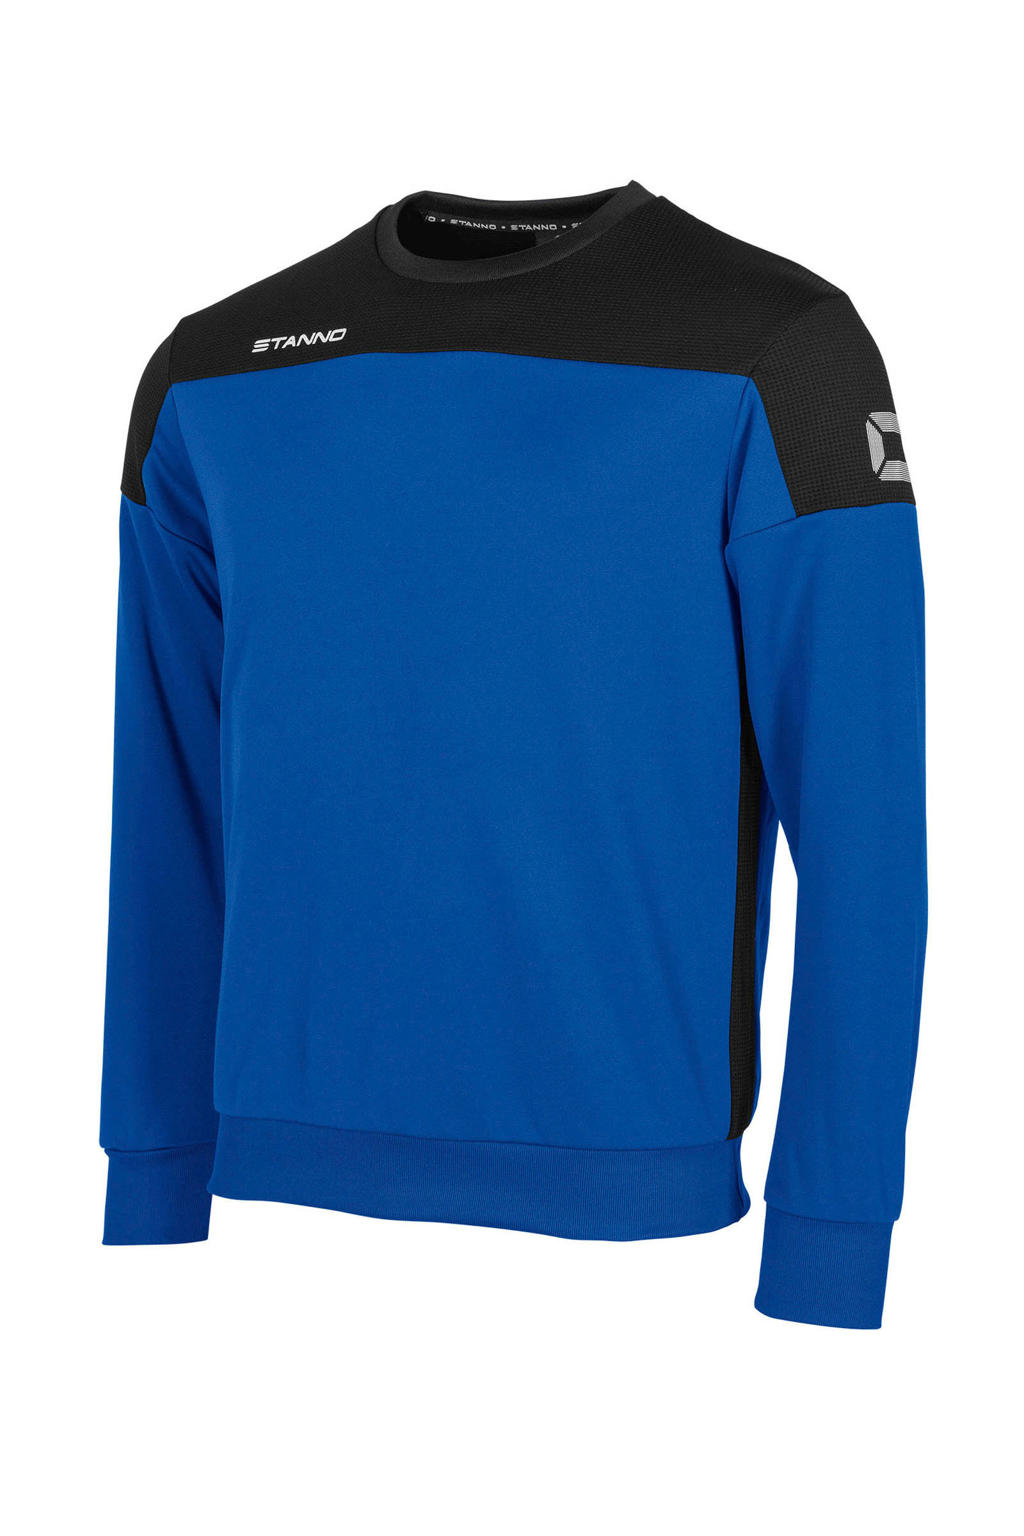 Stanno   voetbalsweater blauw/zwart